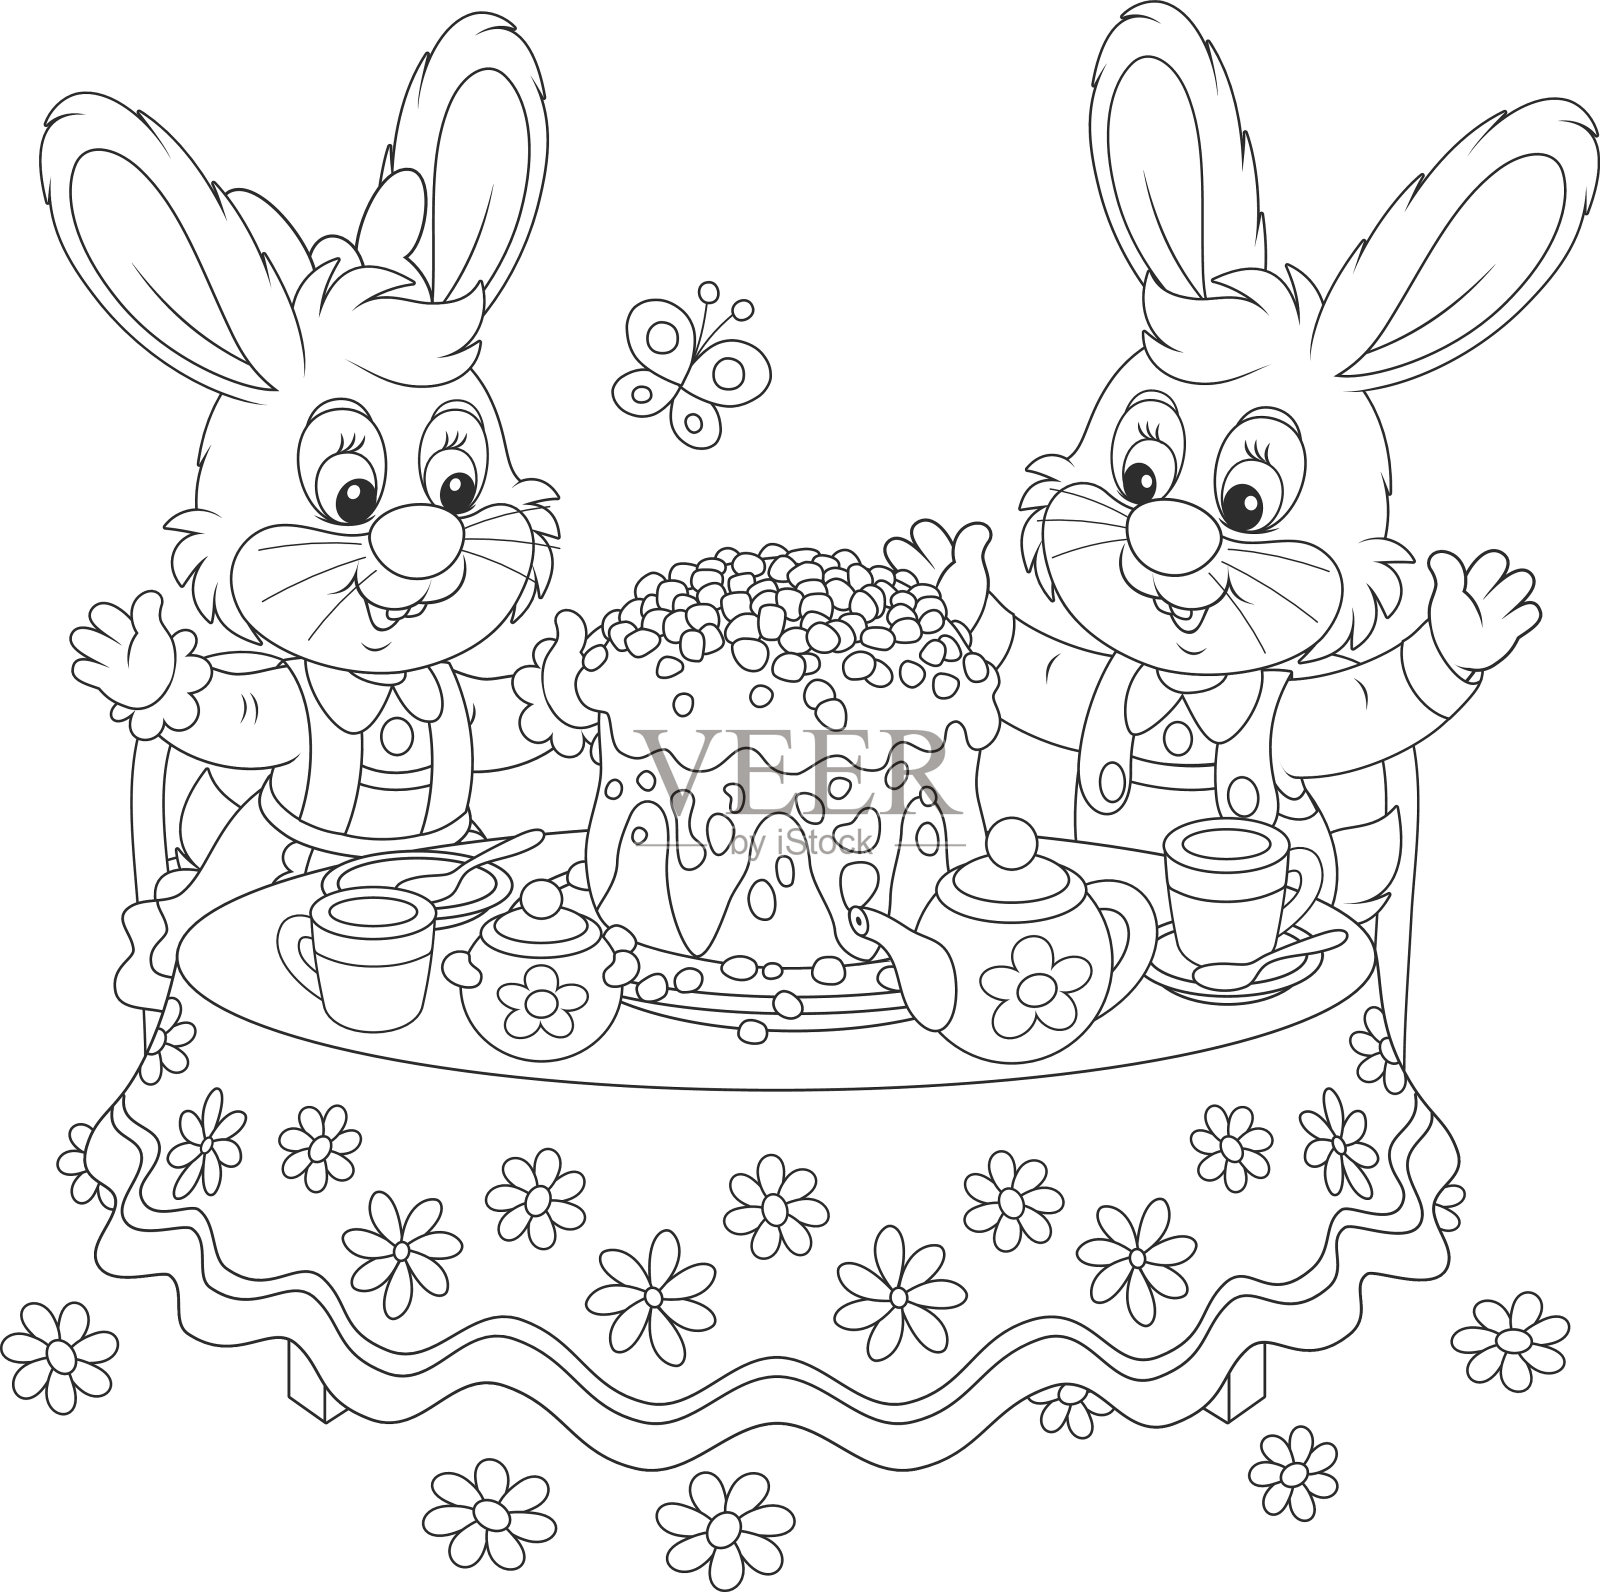 兔子形状的蛋糕图片,蛋糕图片,形状拼图形图片大全_大山谷图库